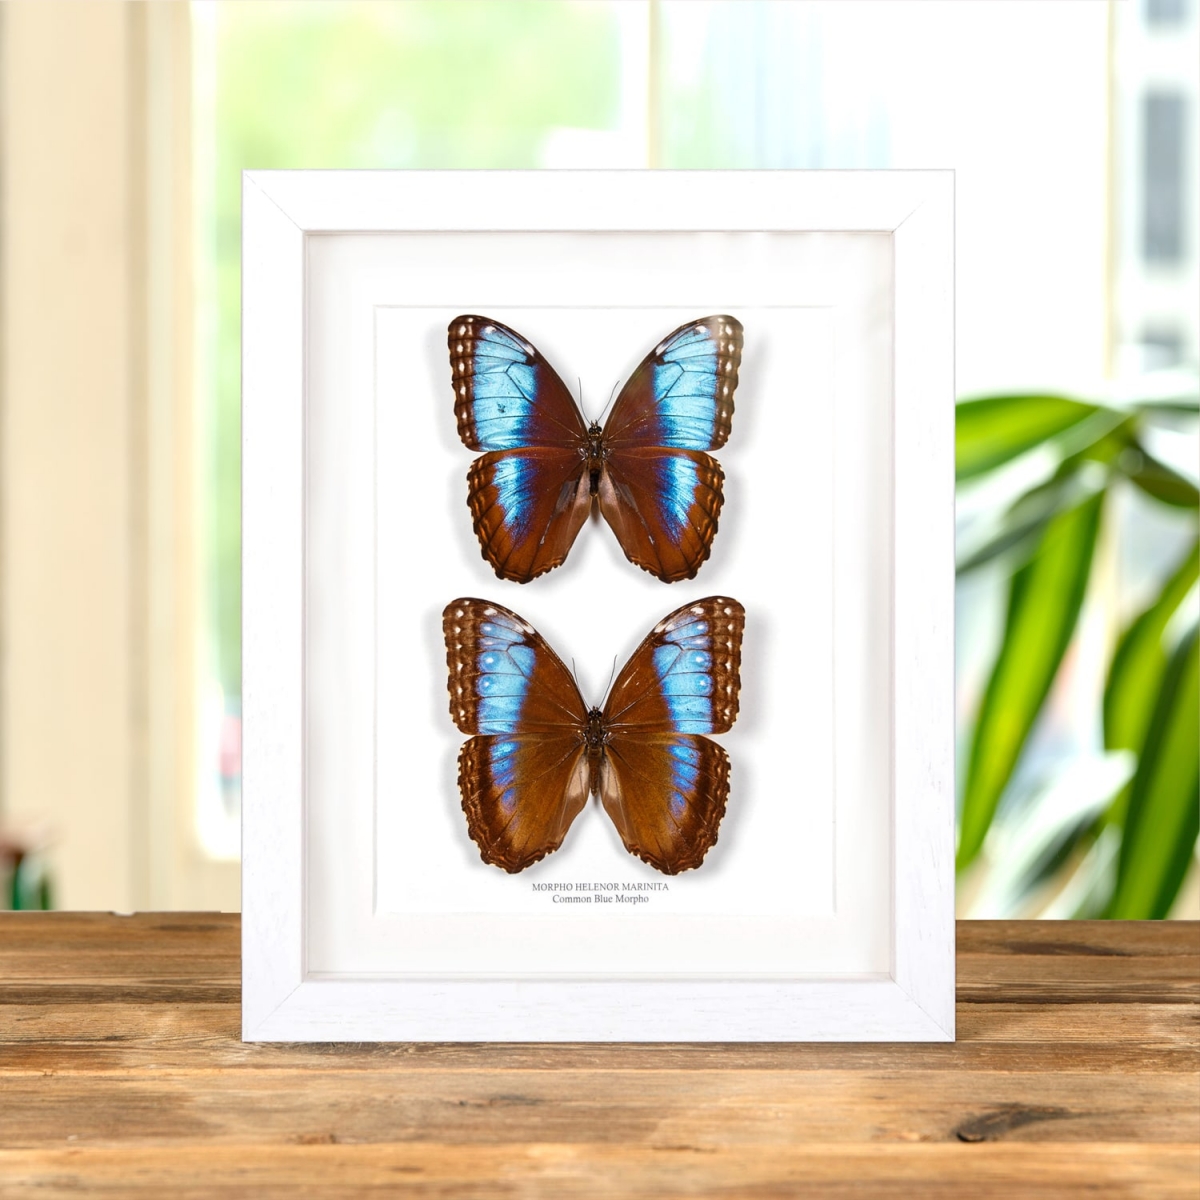 Blue Morpho Butterfly Male & Female In Box Frame (Morpho helenor marinita)